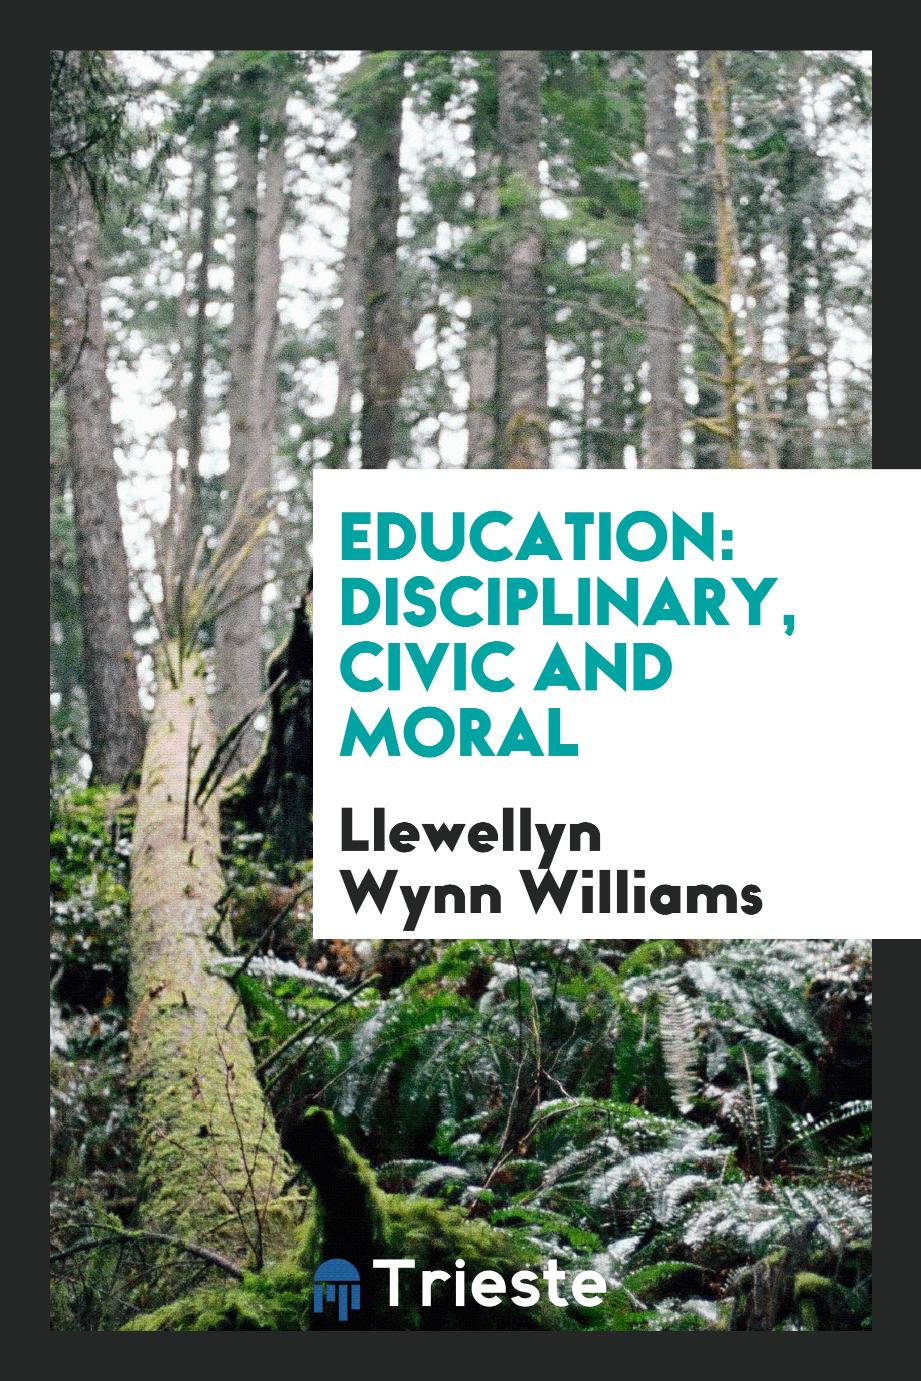 Education: disciplinary, civic and moral